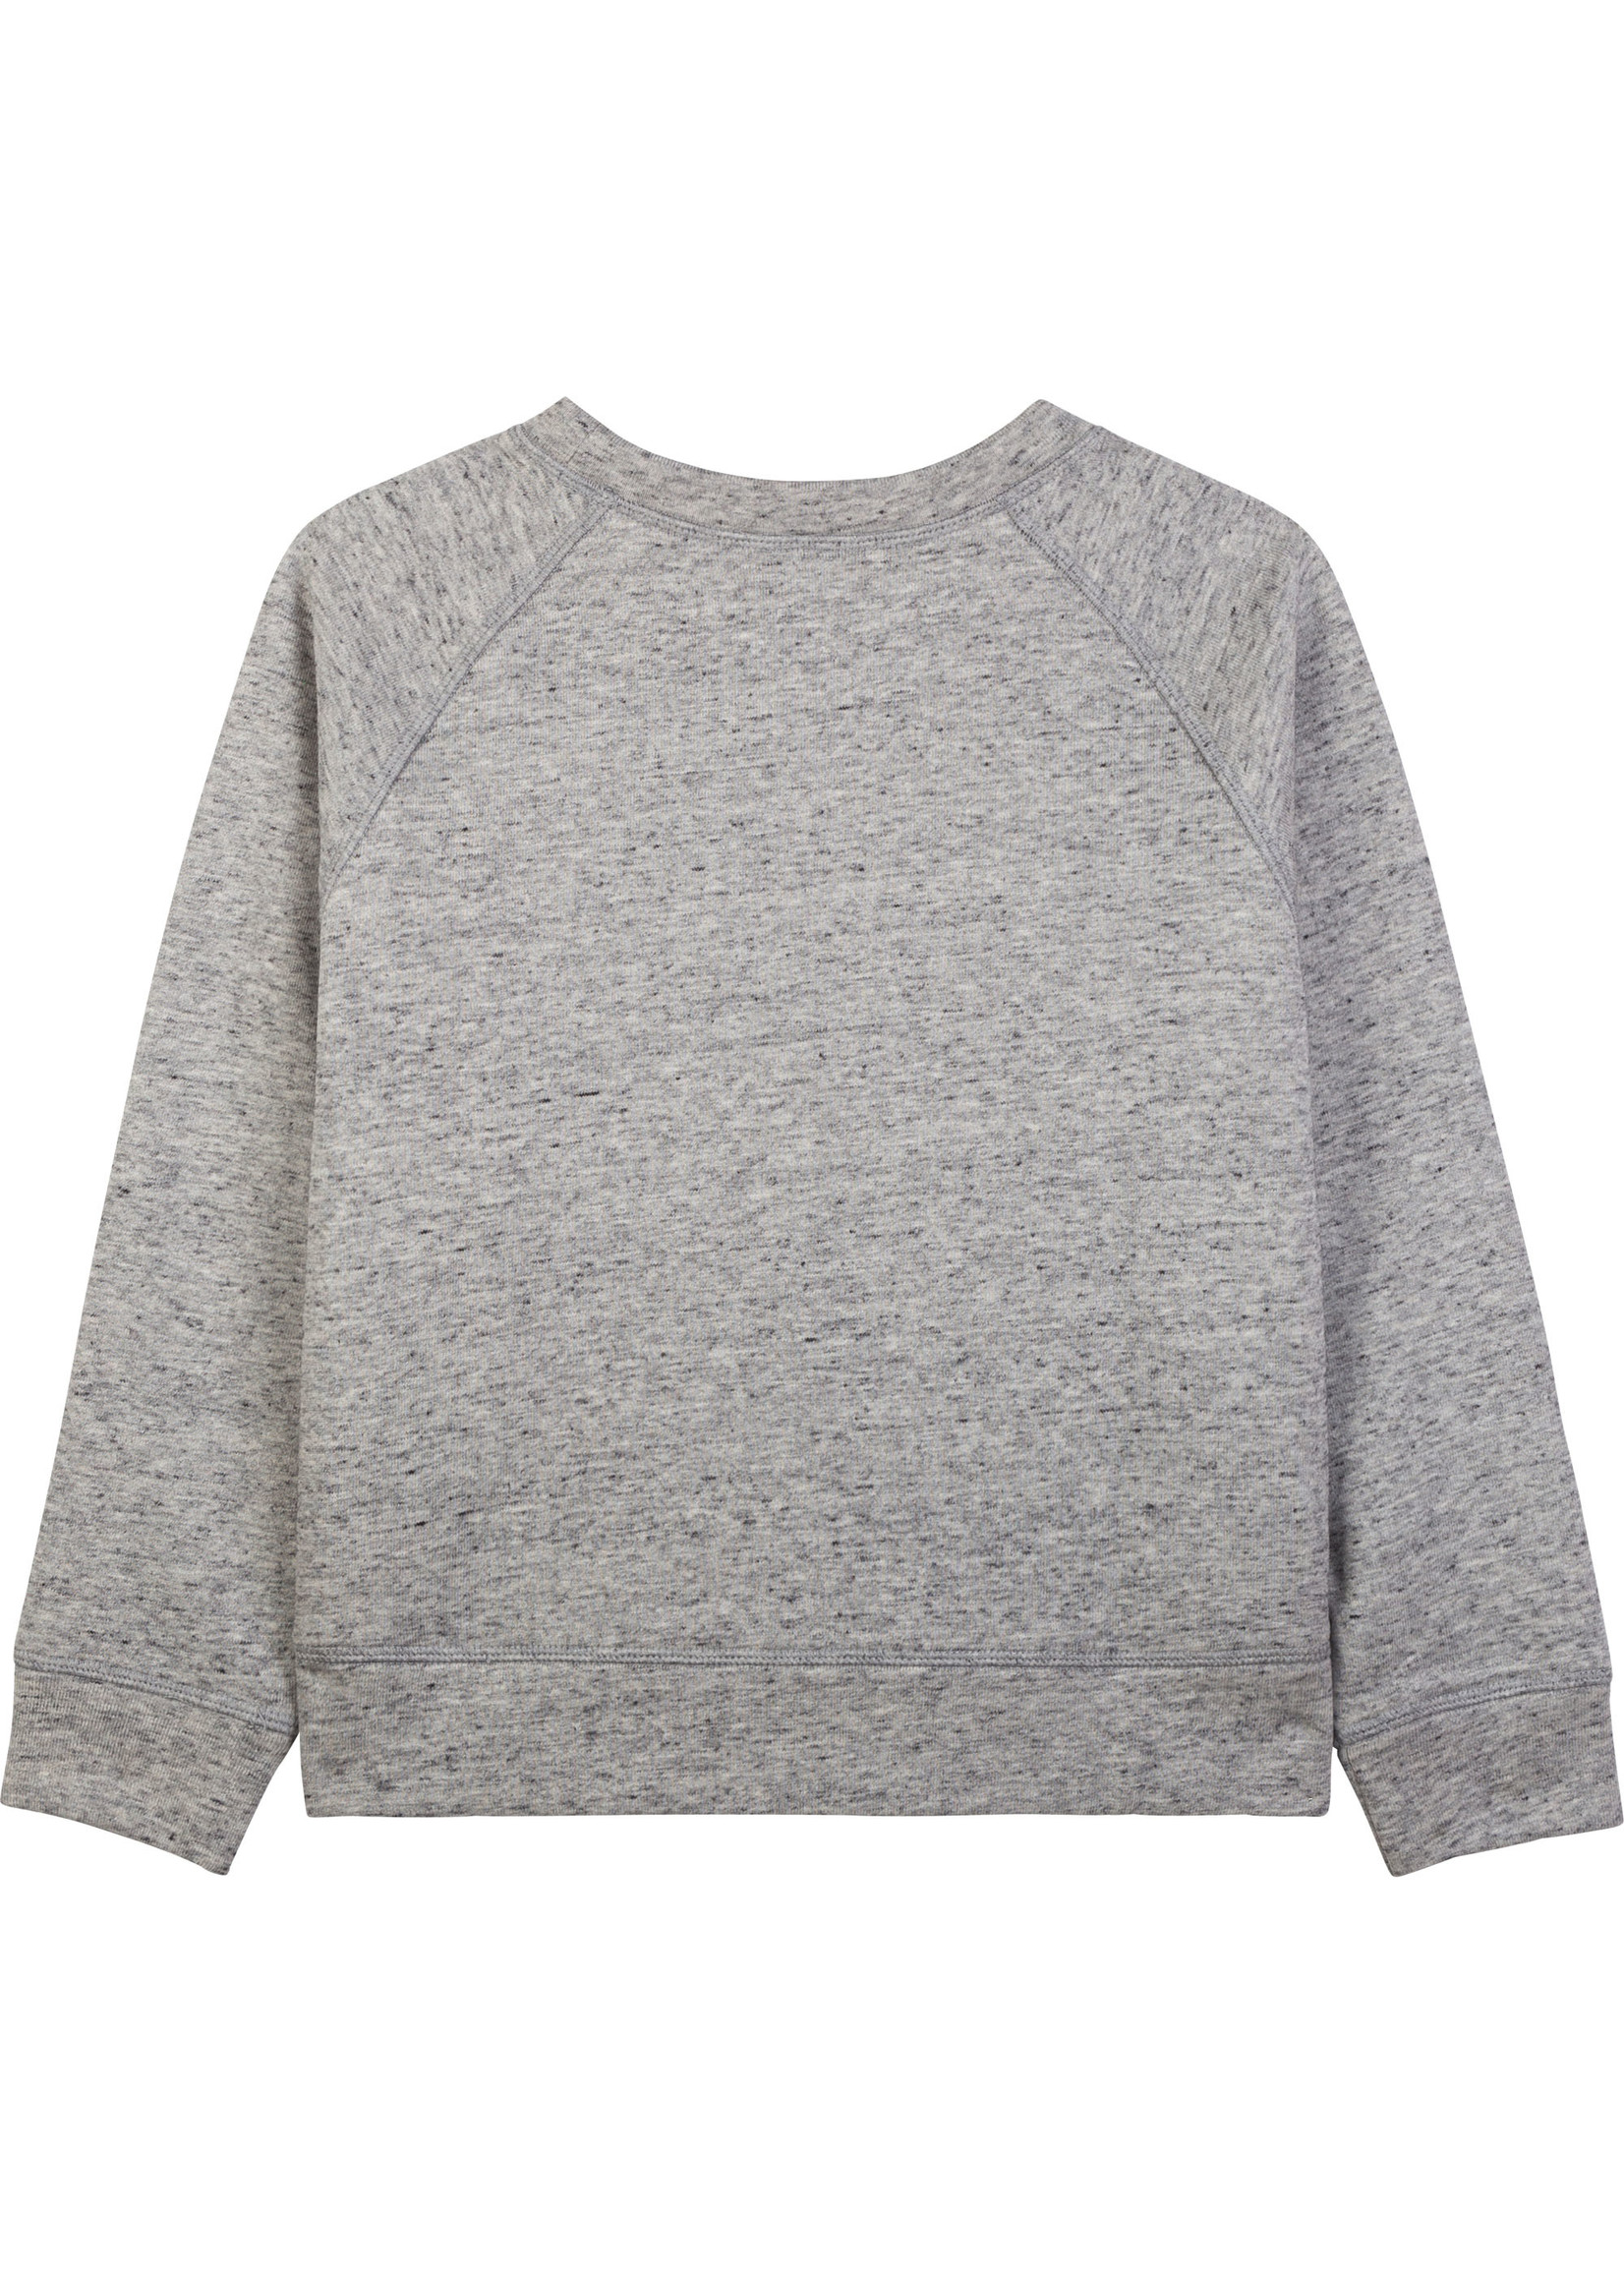 Zadig & Voltaire ZADIG&VOLTAIRE Sweater grey - X15313